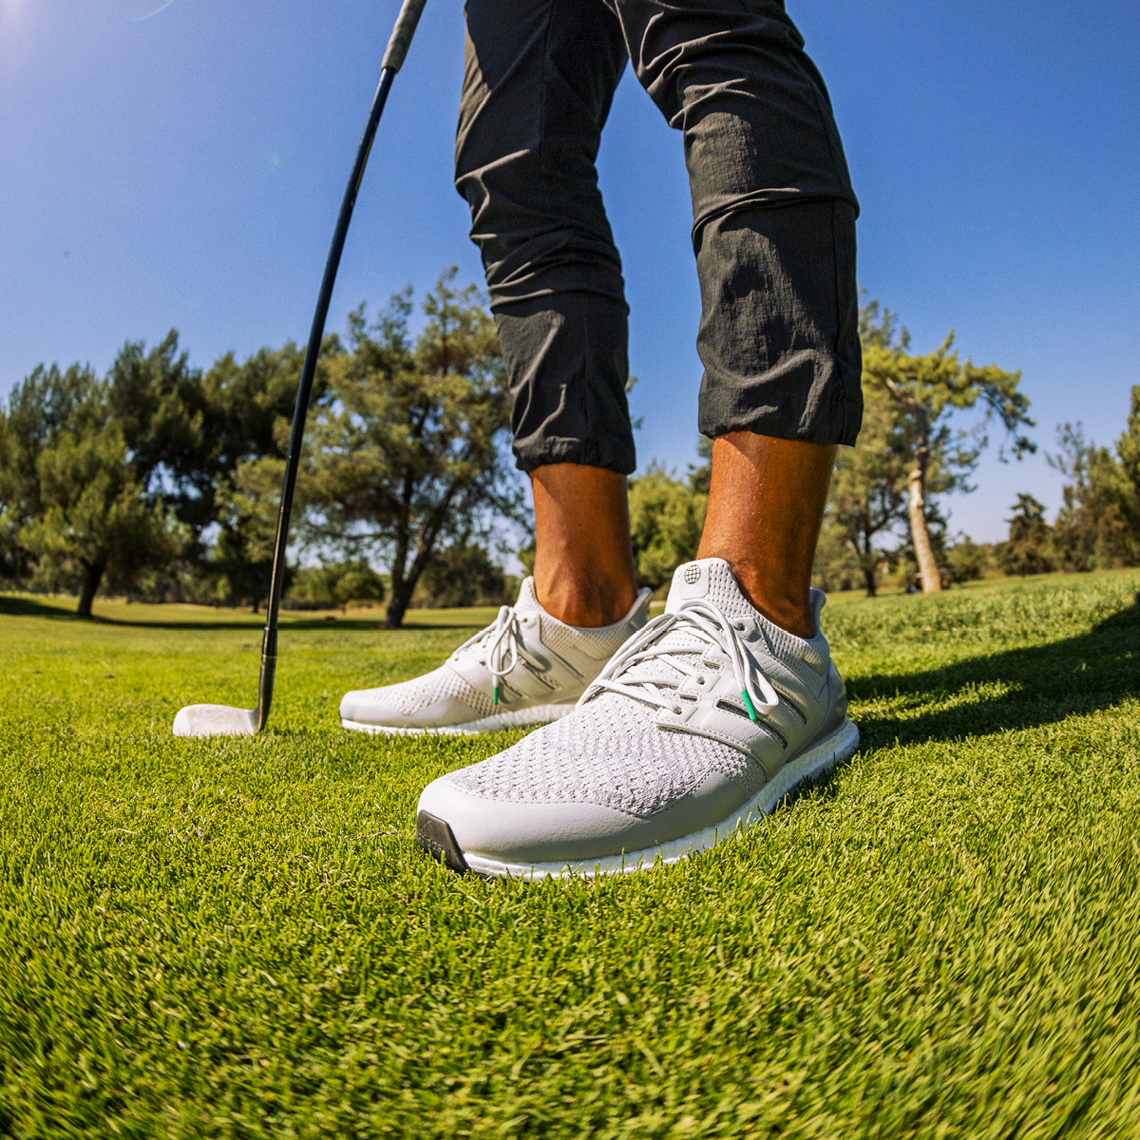 adidas UltraBOOST Spikeless Golf Release Date | Sneaker News